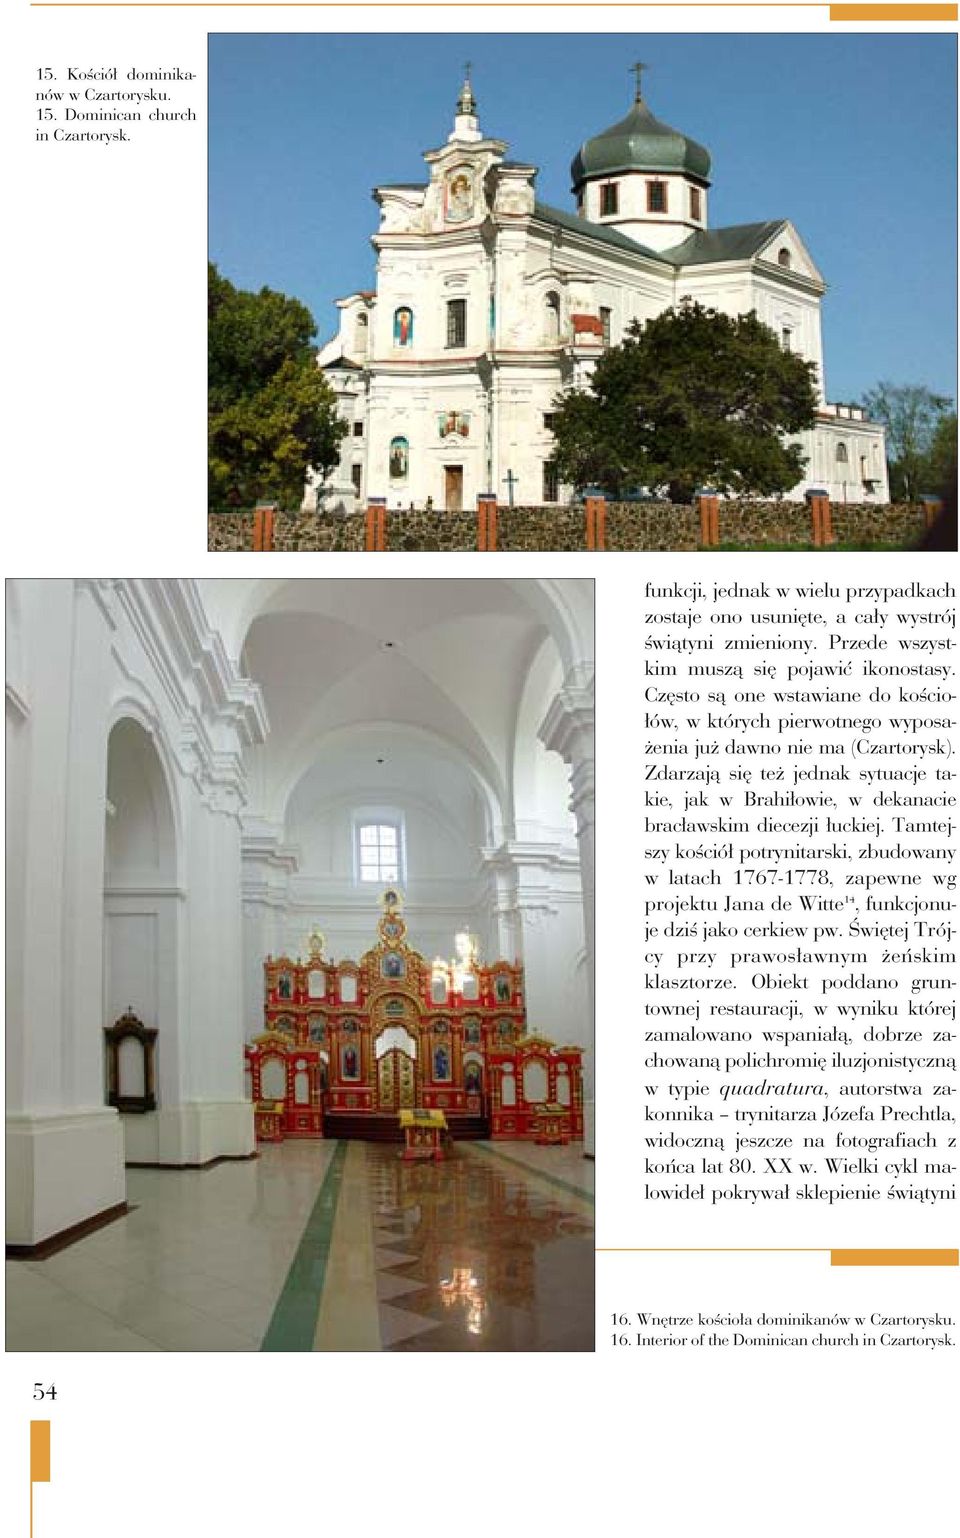 Zdarzają się też jednak sytuacje takie, jak w Brahiłowie, w dekanacie bracławskim diecezji łuckiej.